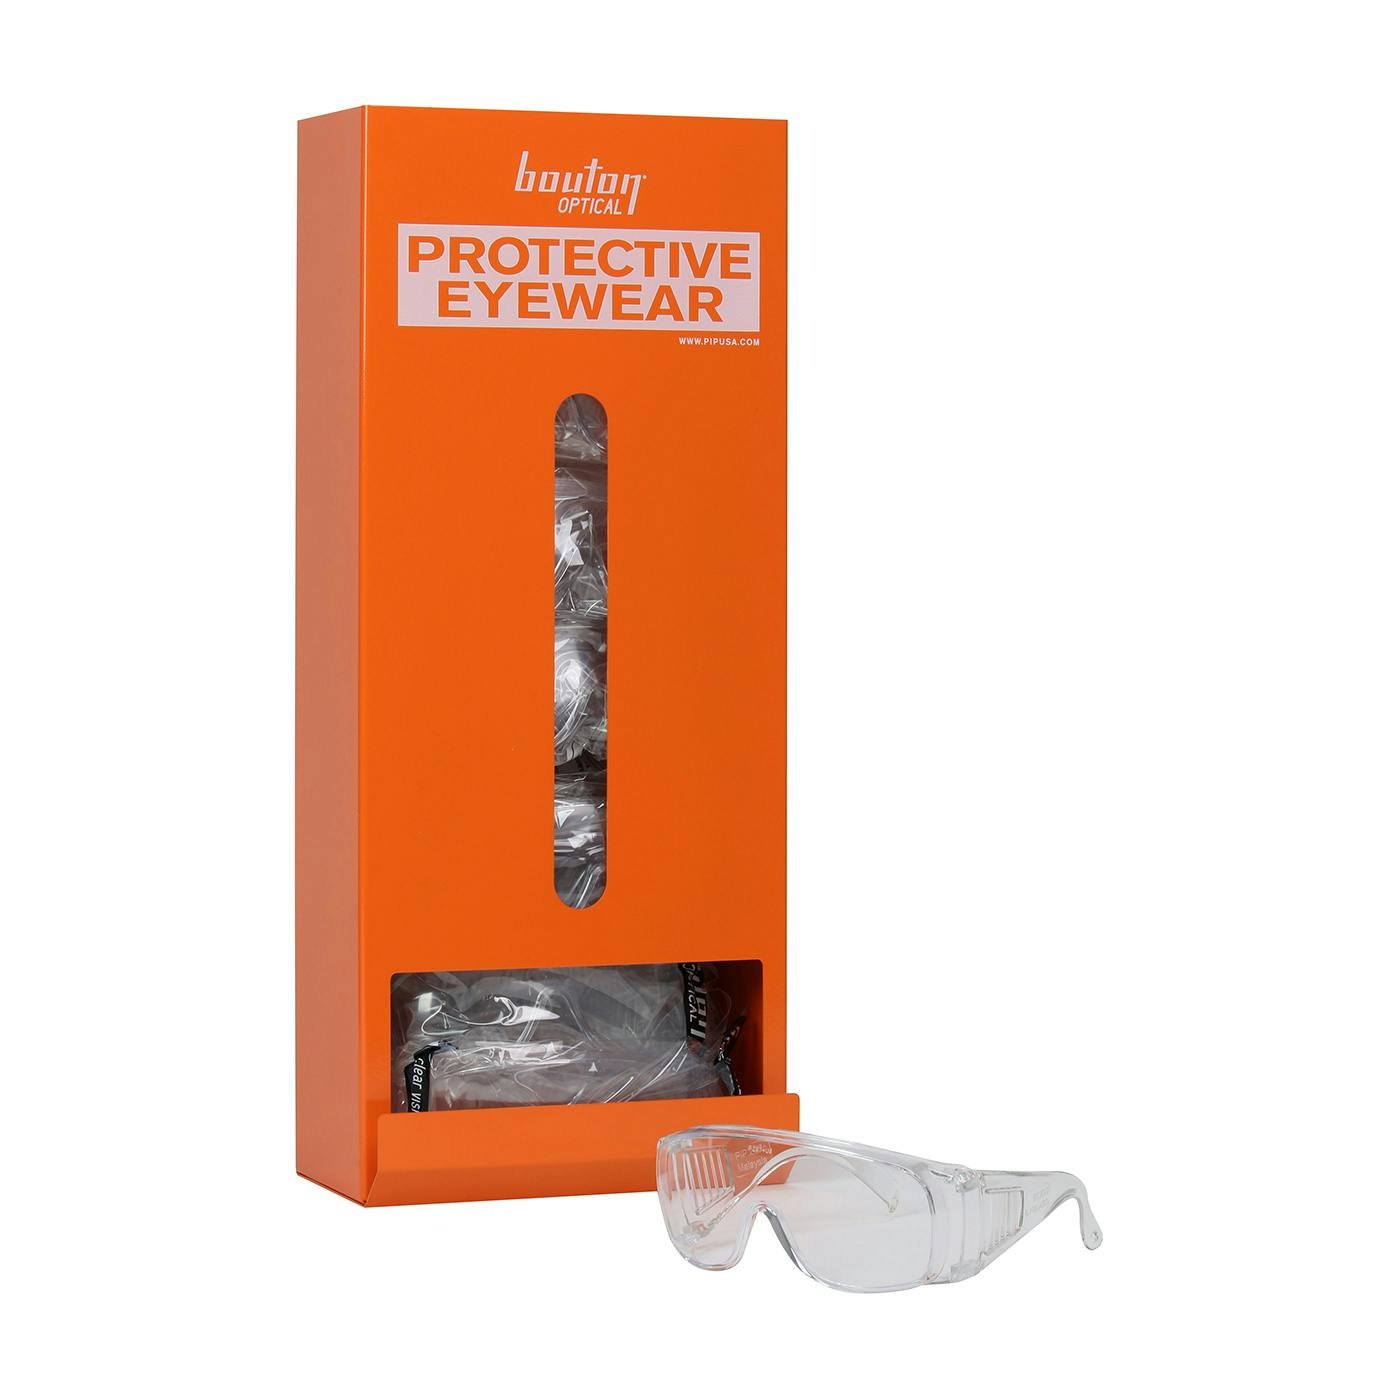 Wall-Mounted Eyewear Dispenser, Orange (252-ED100) - OS